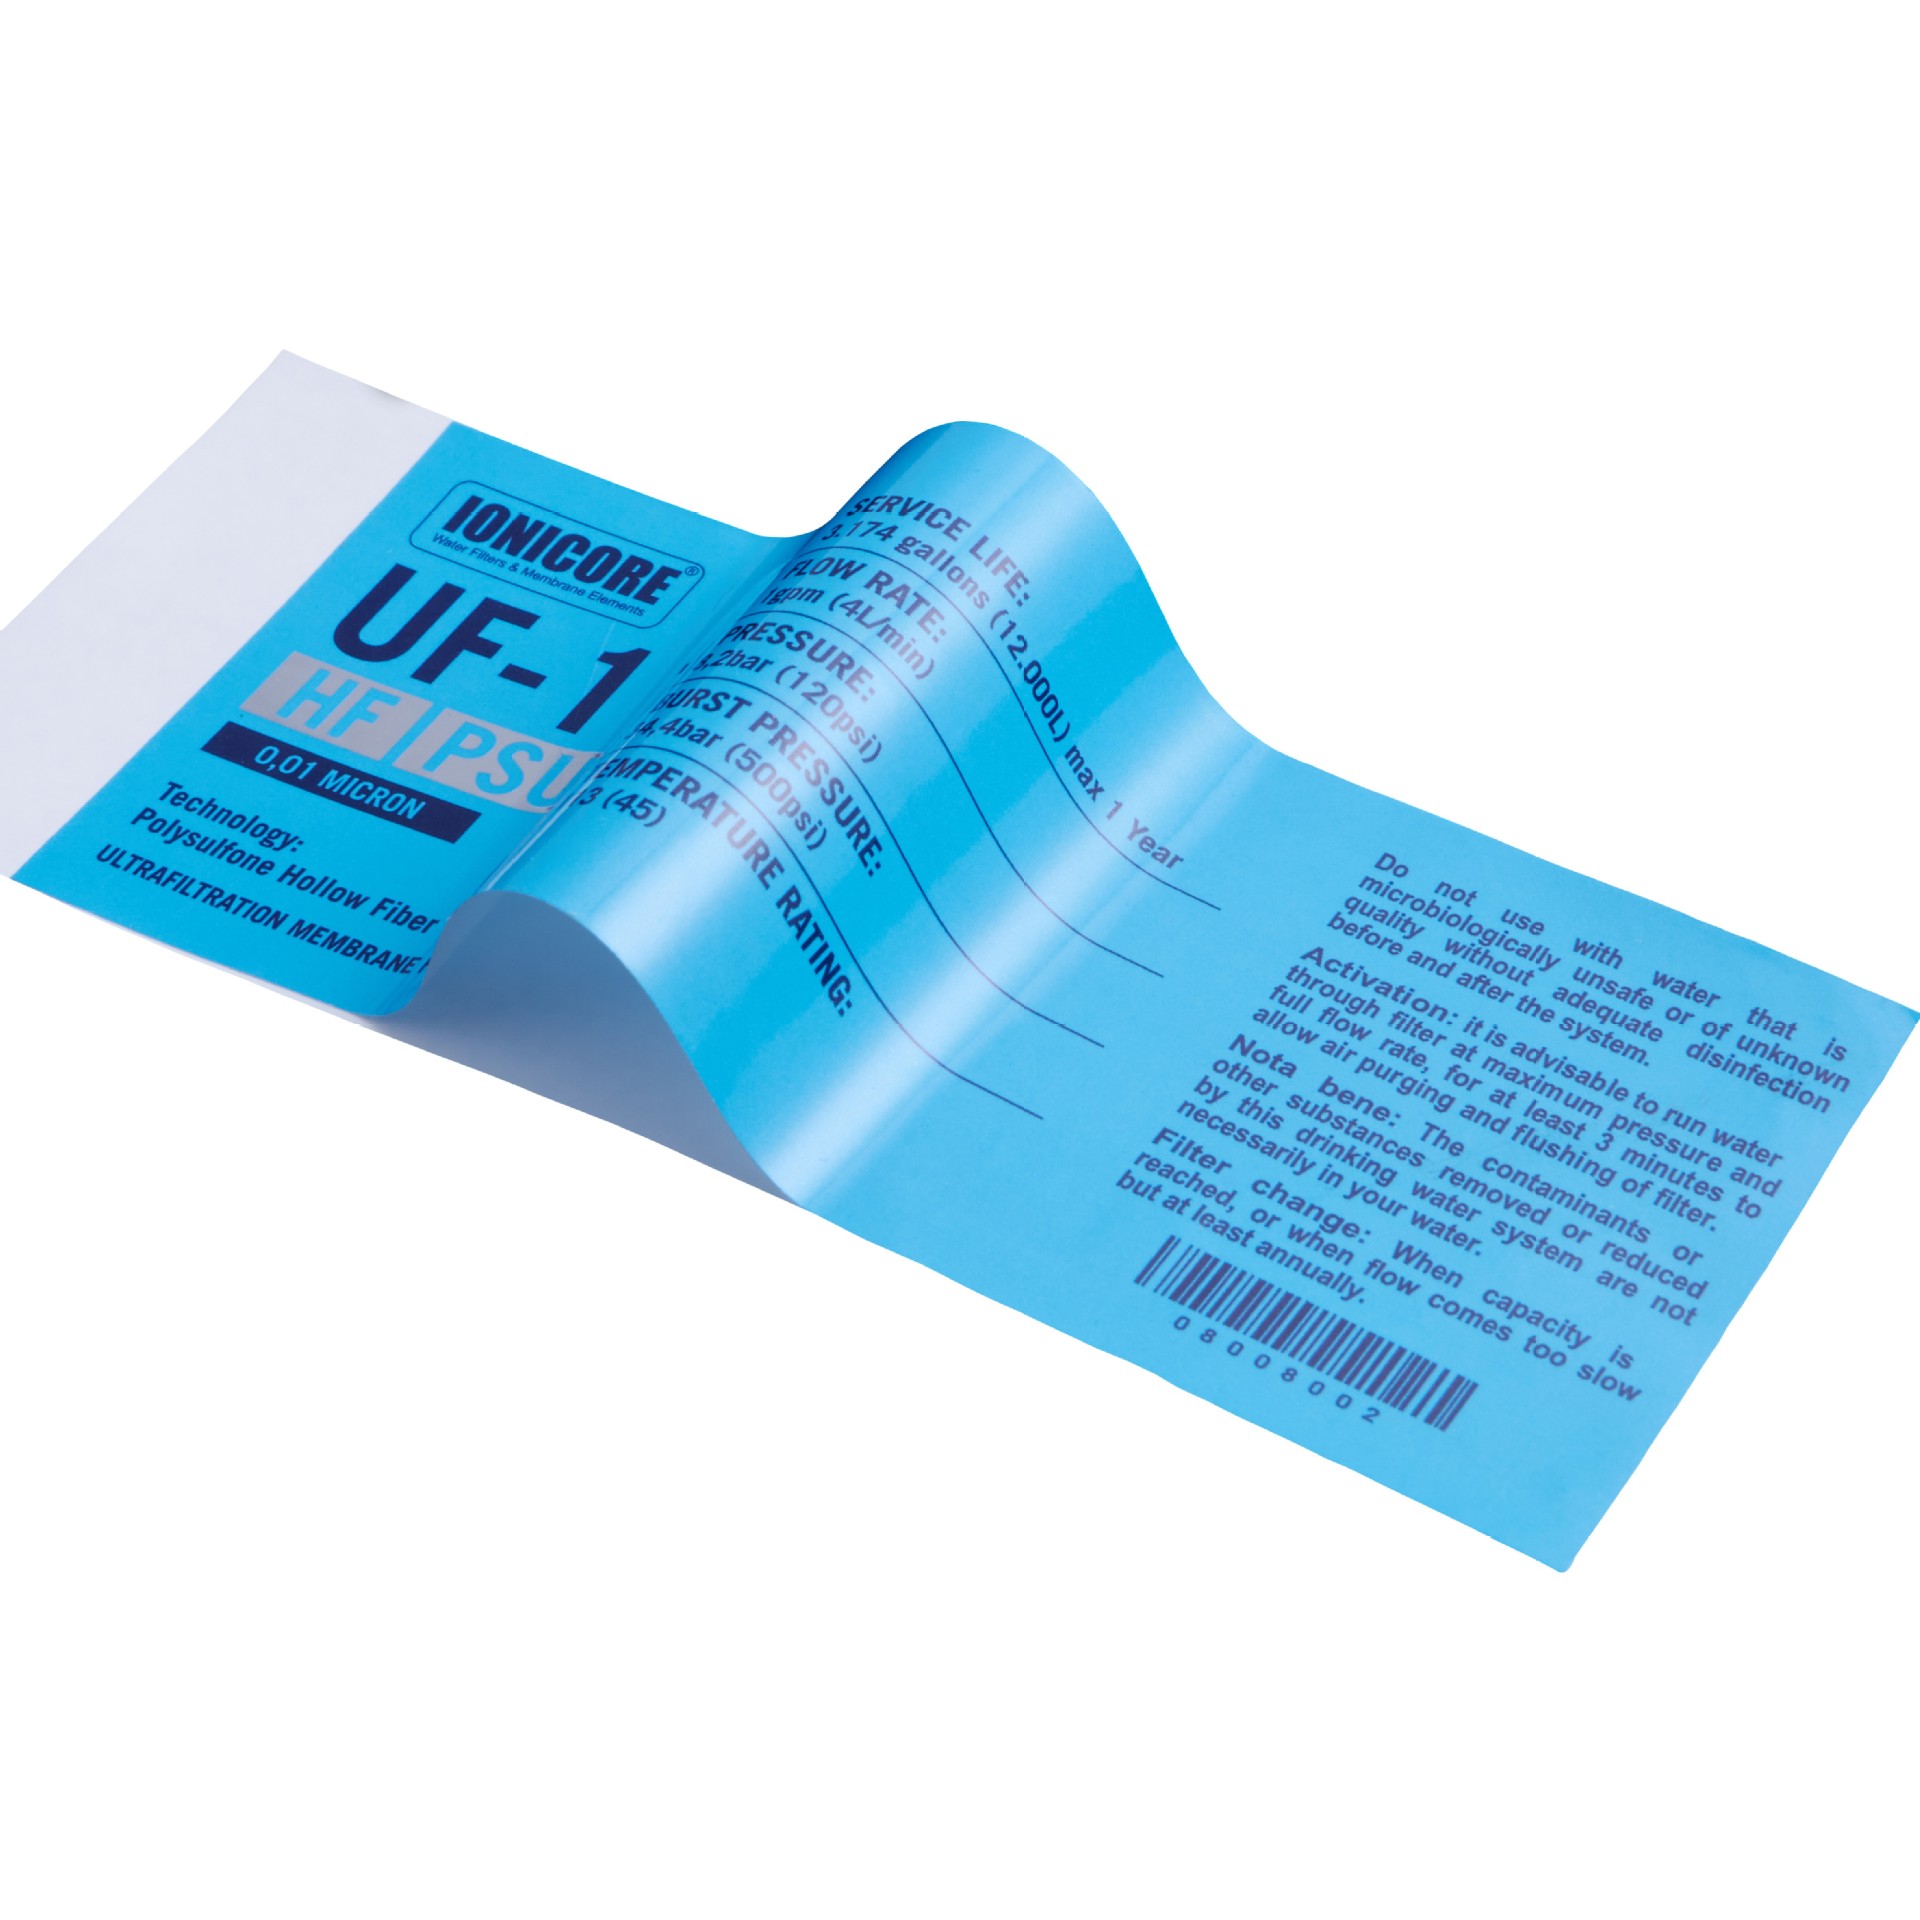 Özel Baskılı Etiket Su Geçirmez PVC Mavi Etiket Etiket